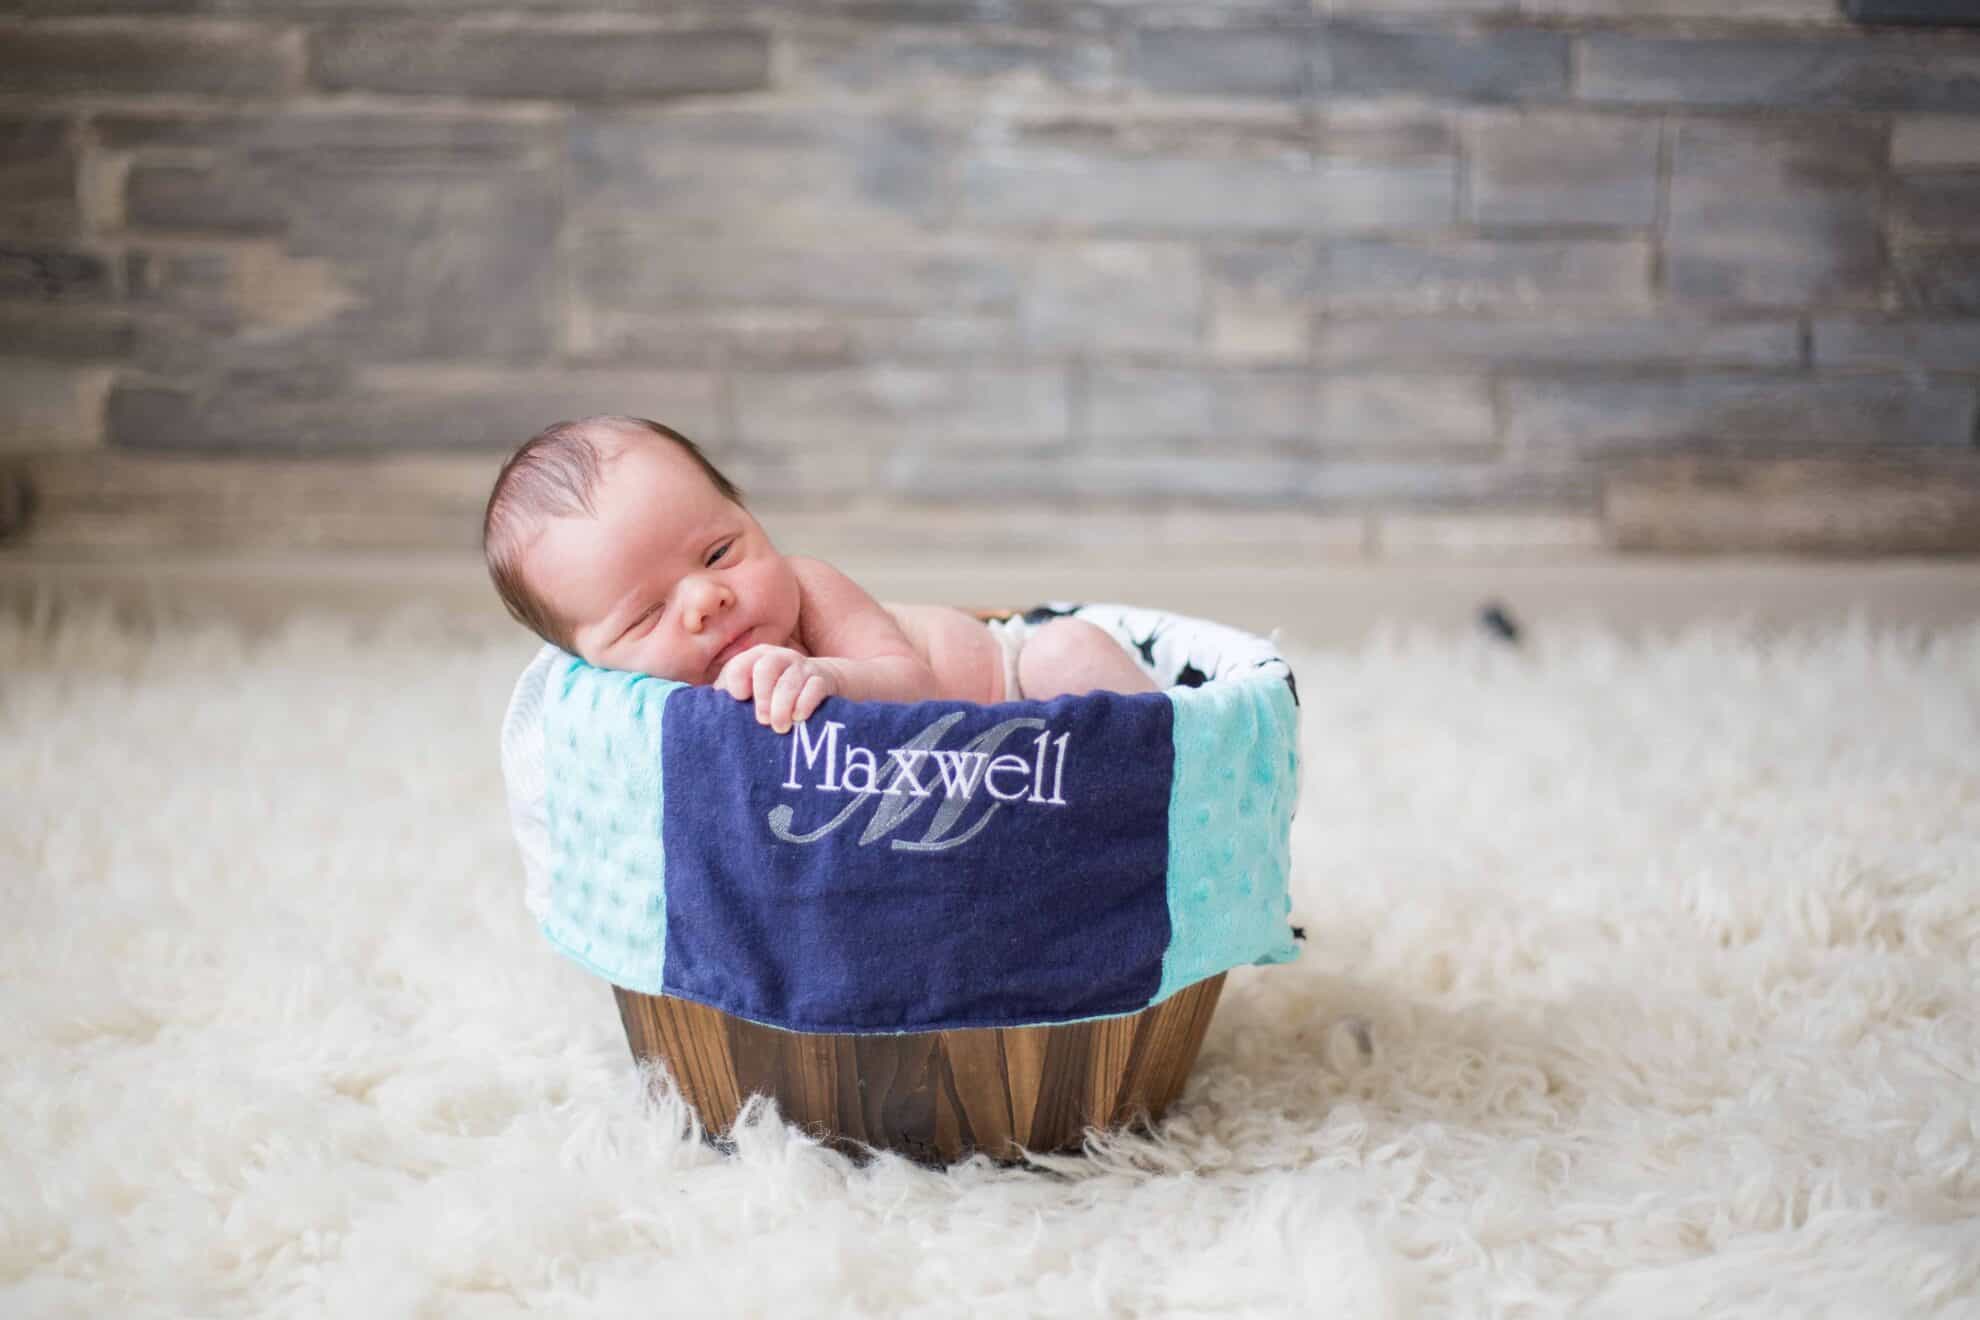 Newborn baby in basket. 